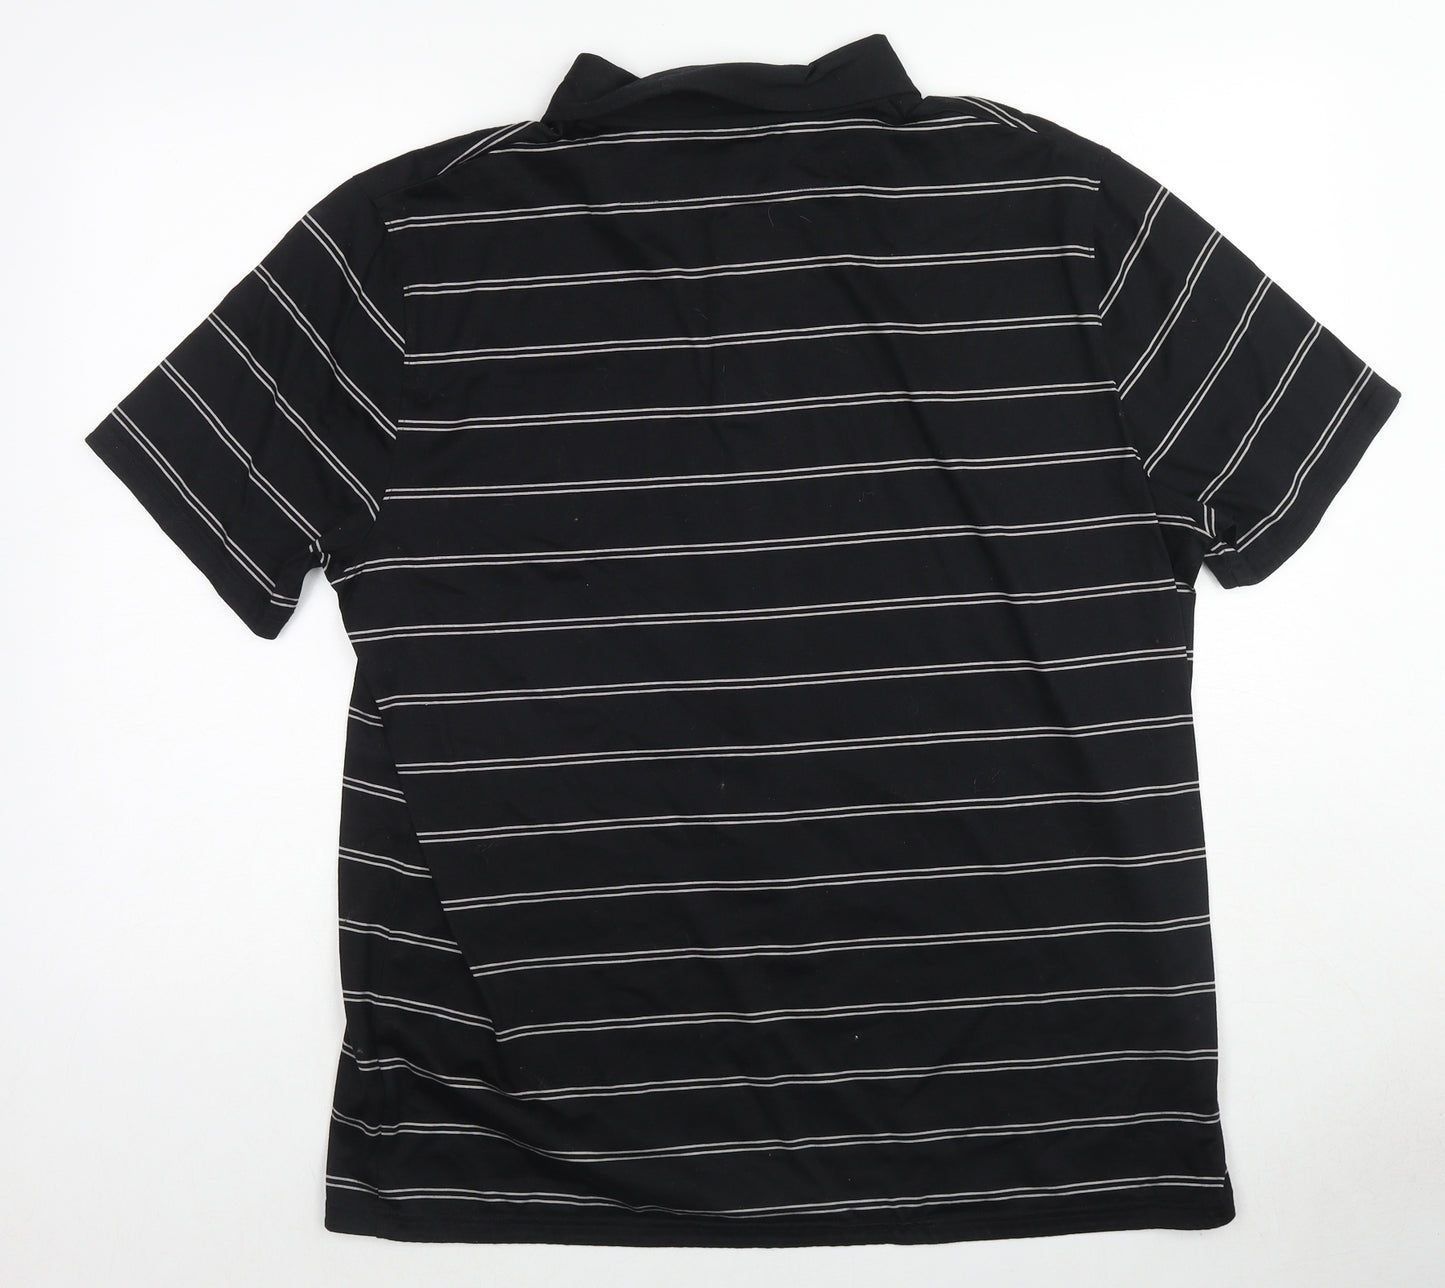 Autograph Mens Black Striped Cotton Polo Size XL Collared Pullover